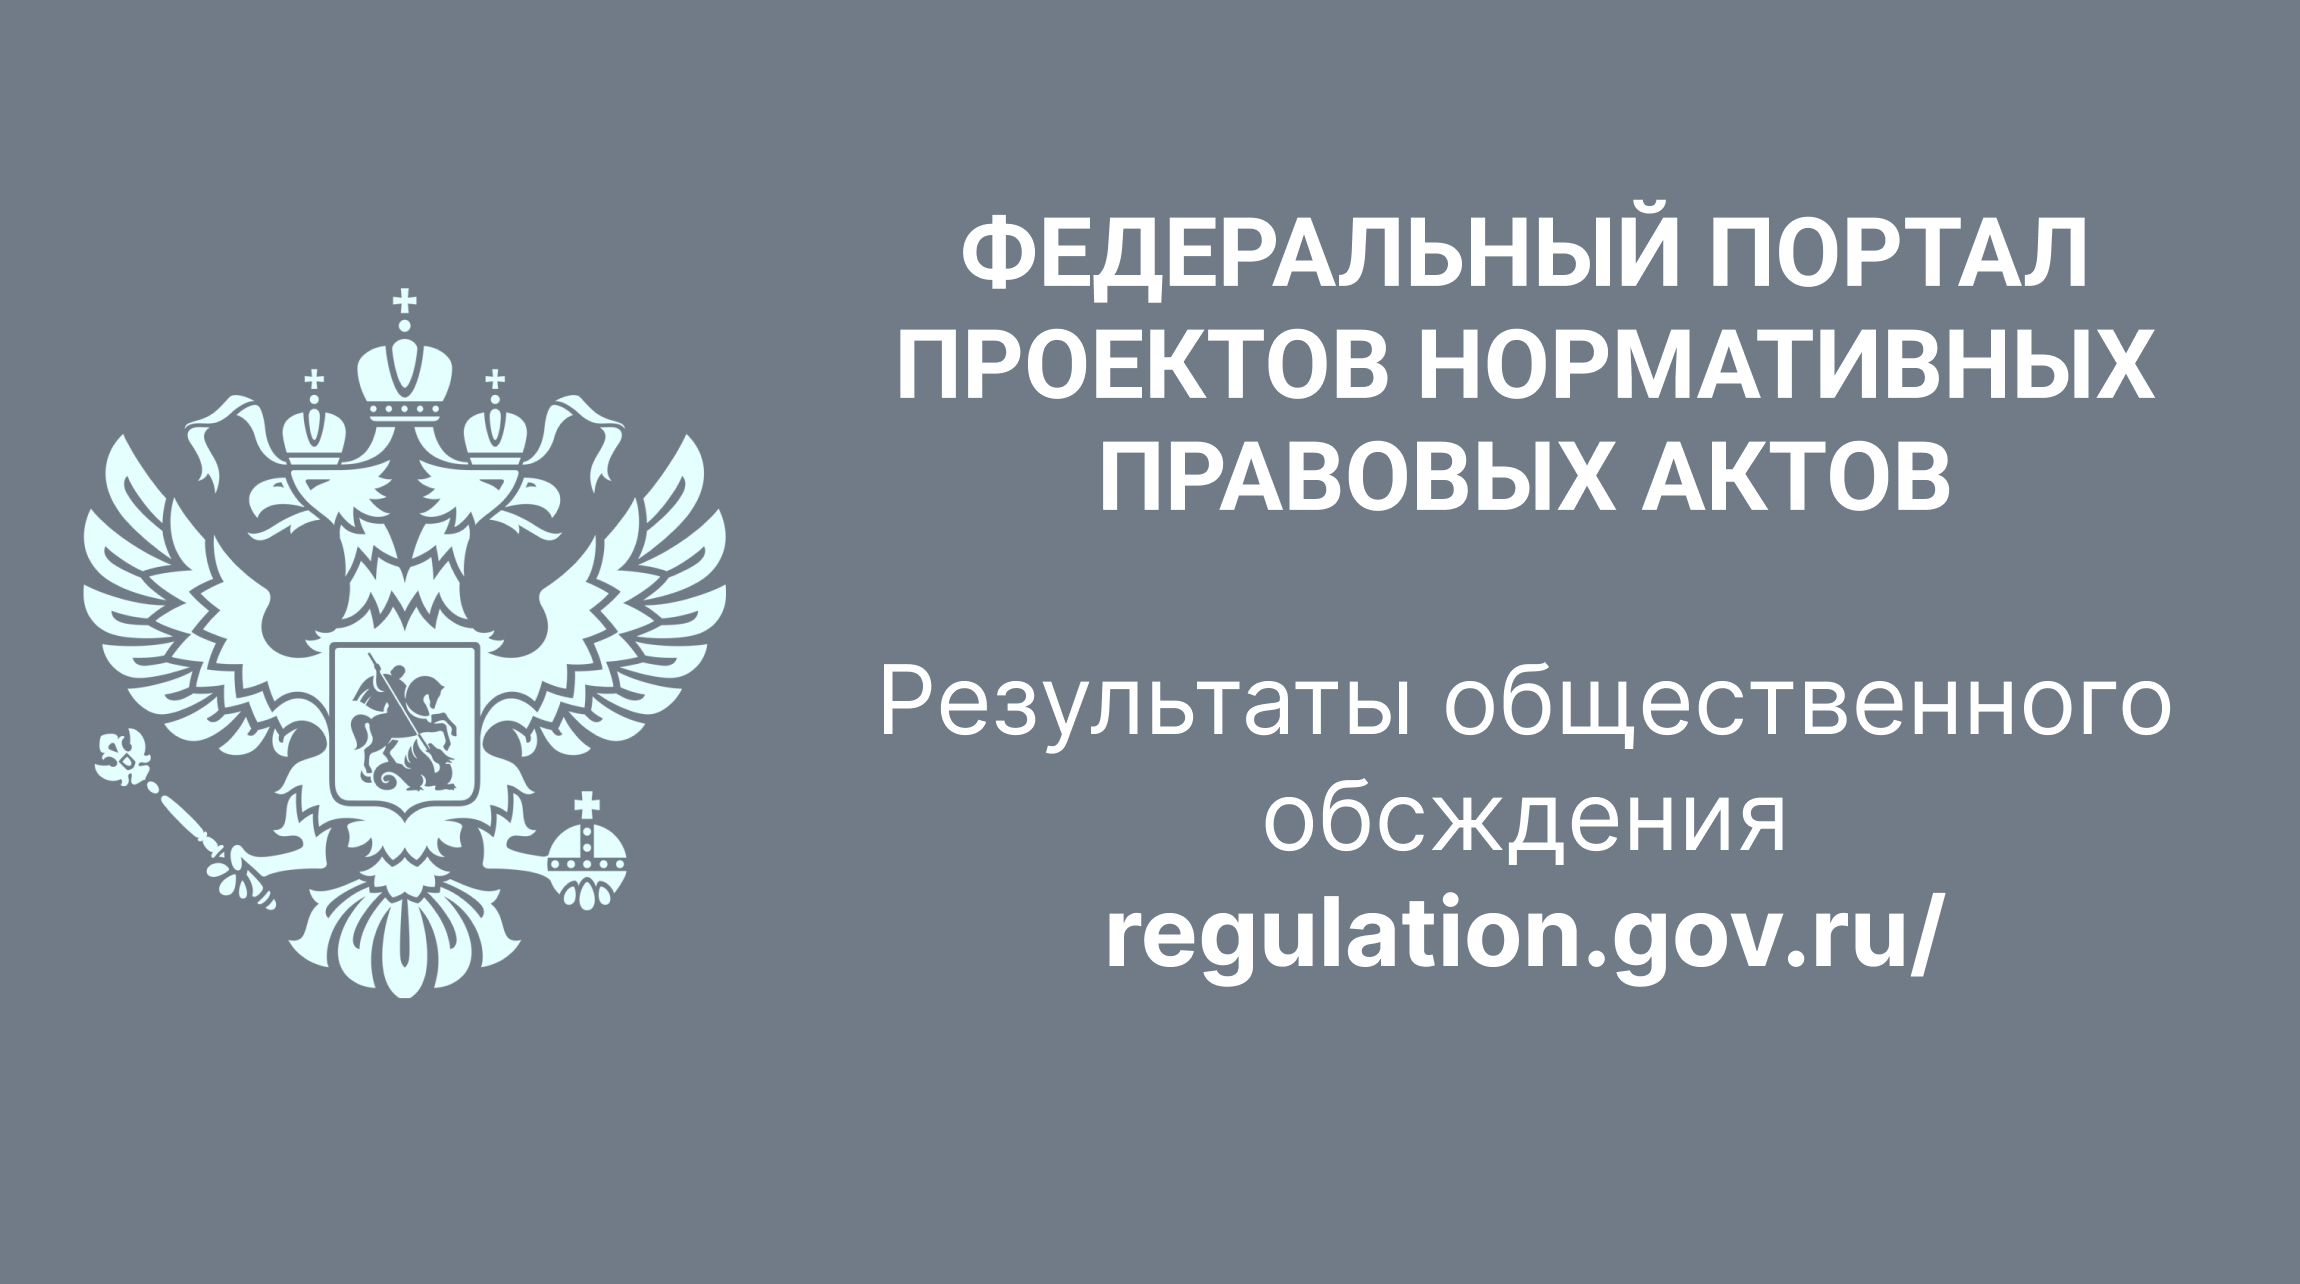 Логотип оценка регулирующего воздействия.